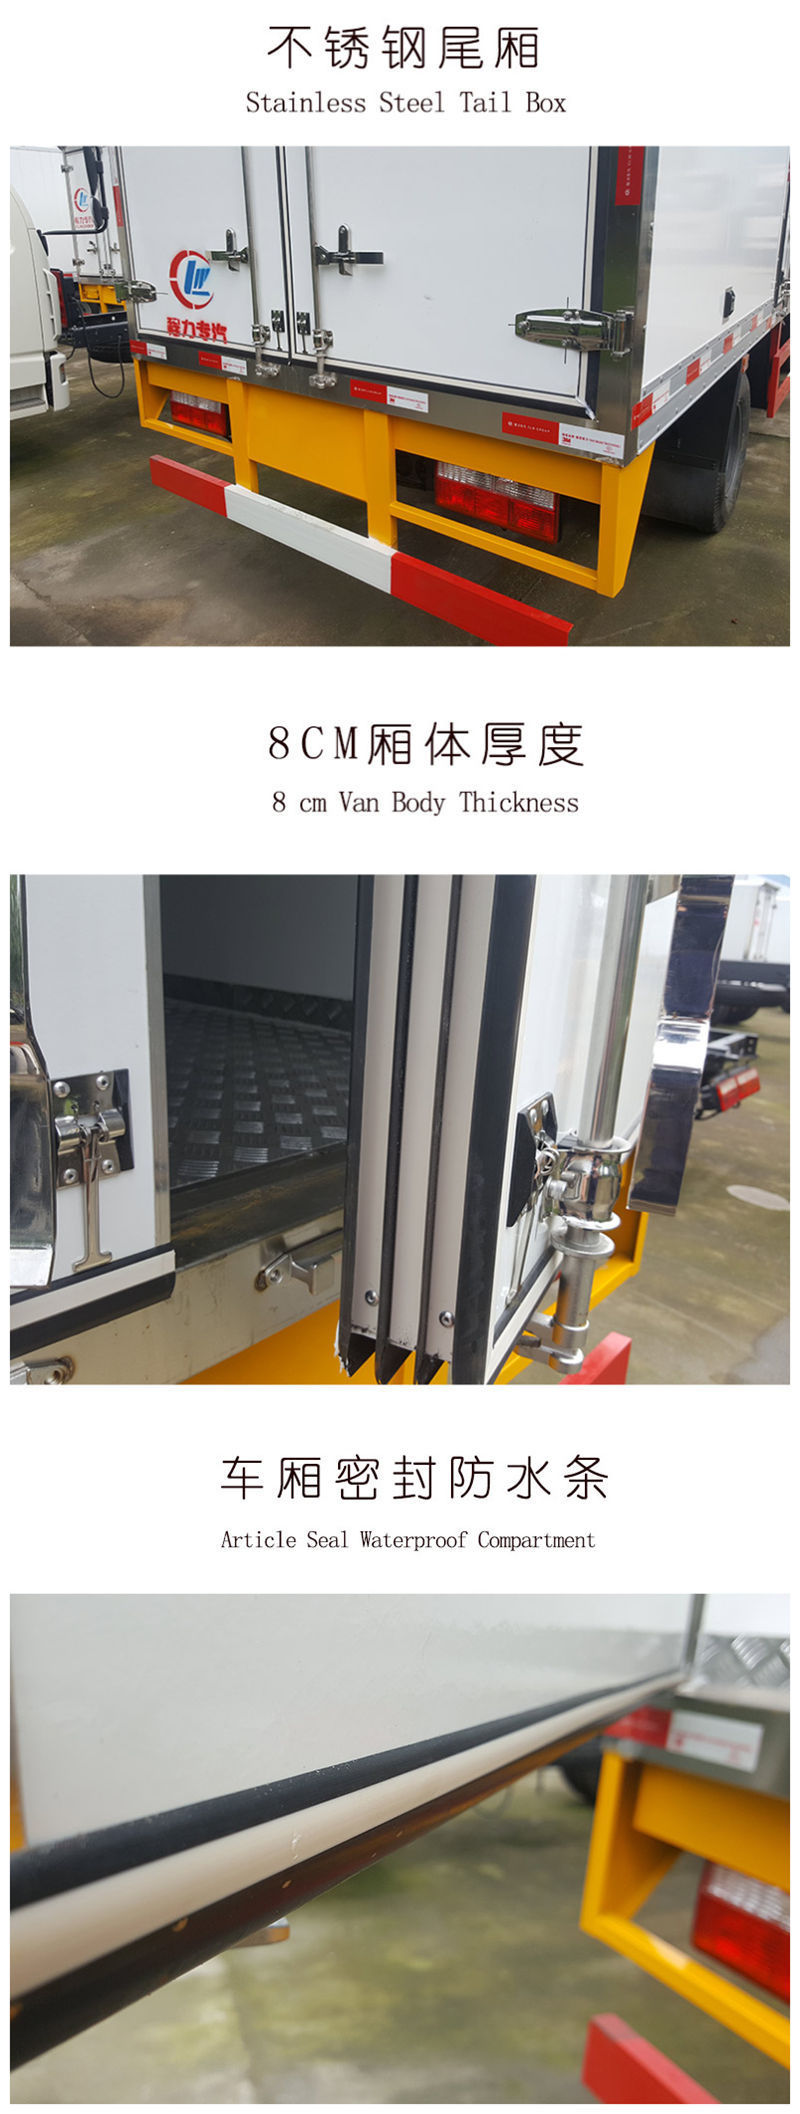 厂家直销江铃龙虾专用冷藏车 保温运输车示例图15